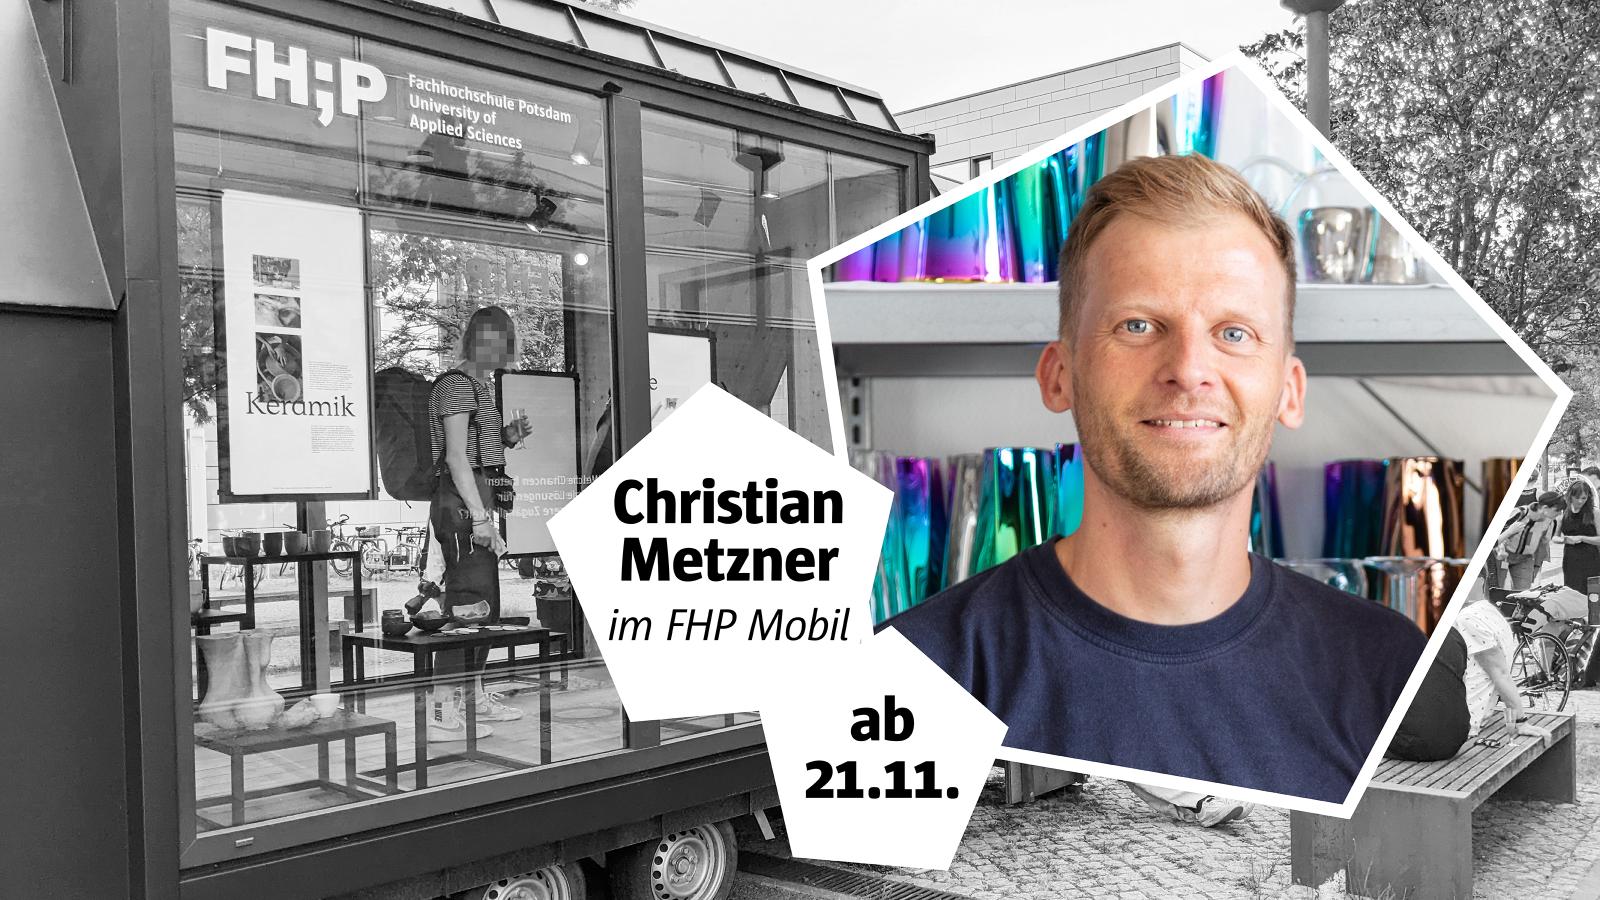 Collage aus dem FHP Mobil in Schwarzwei? und Grnder Christian Metzner als farbiges Portr?tfoto